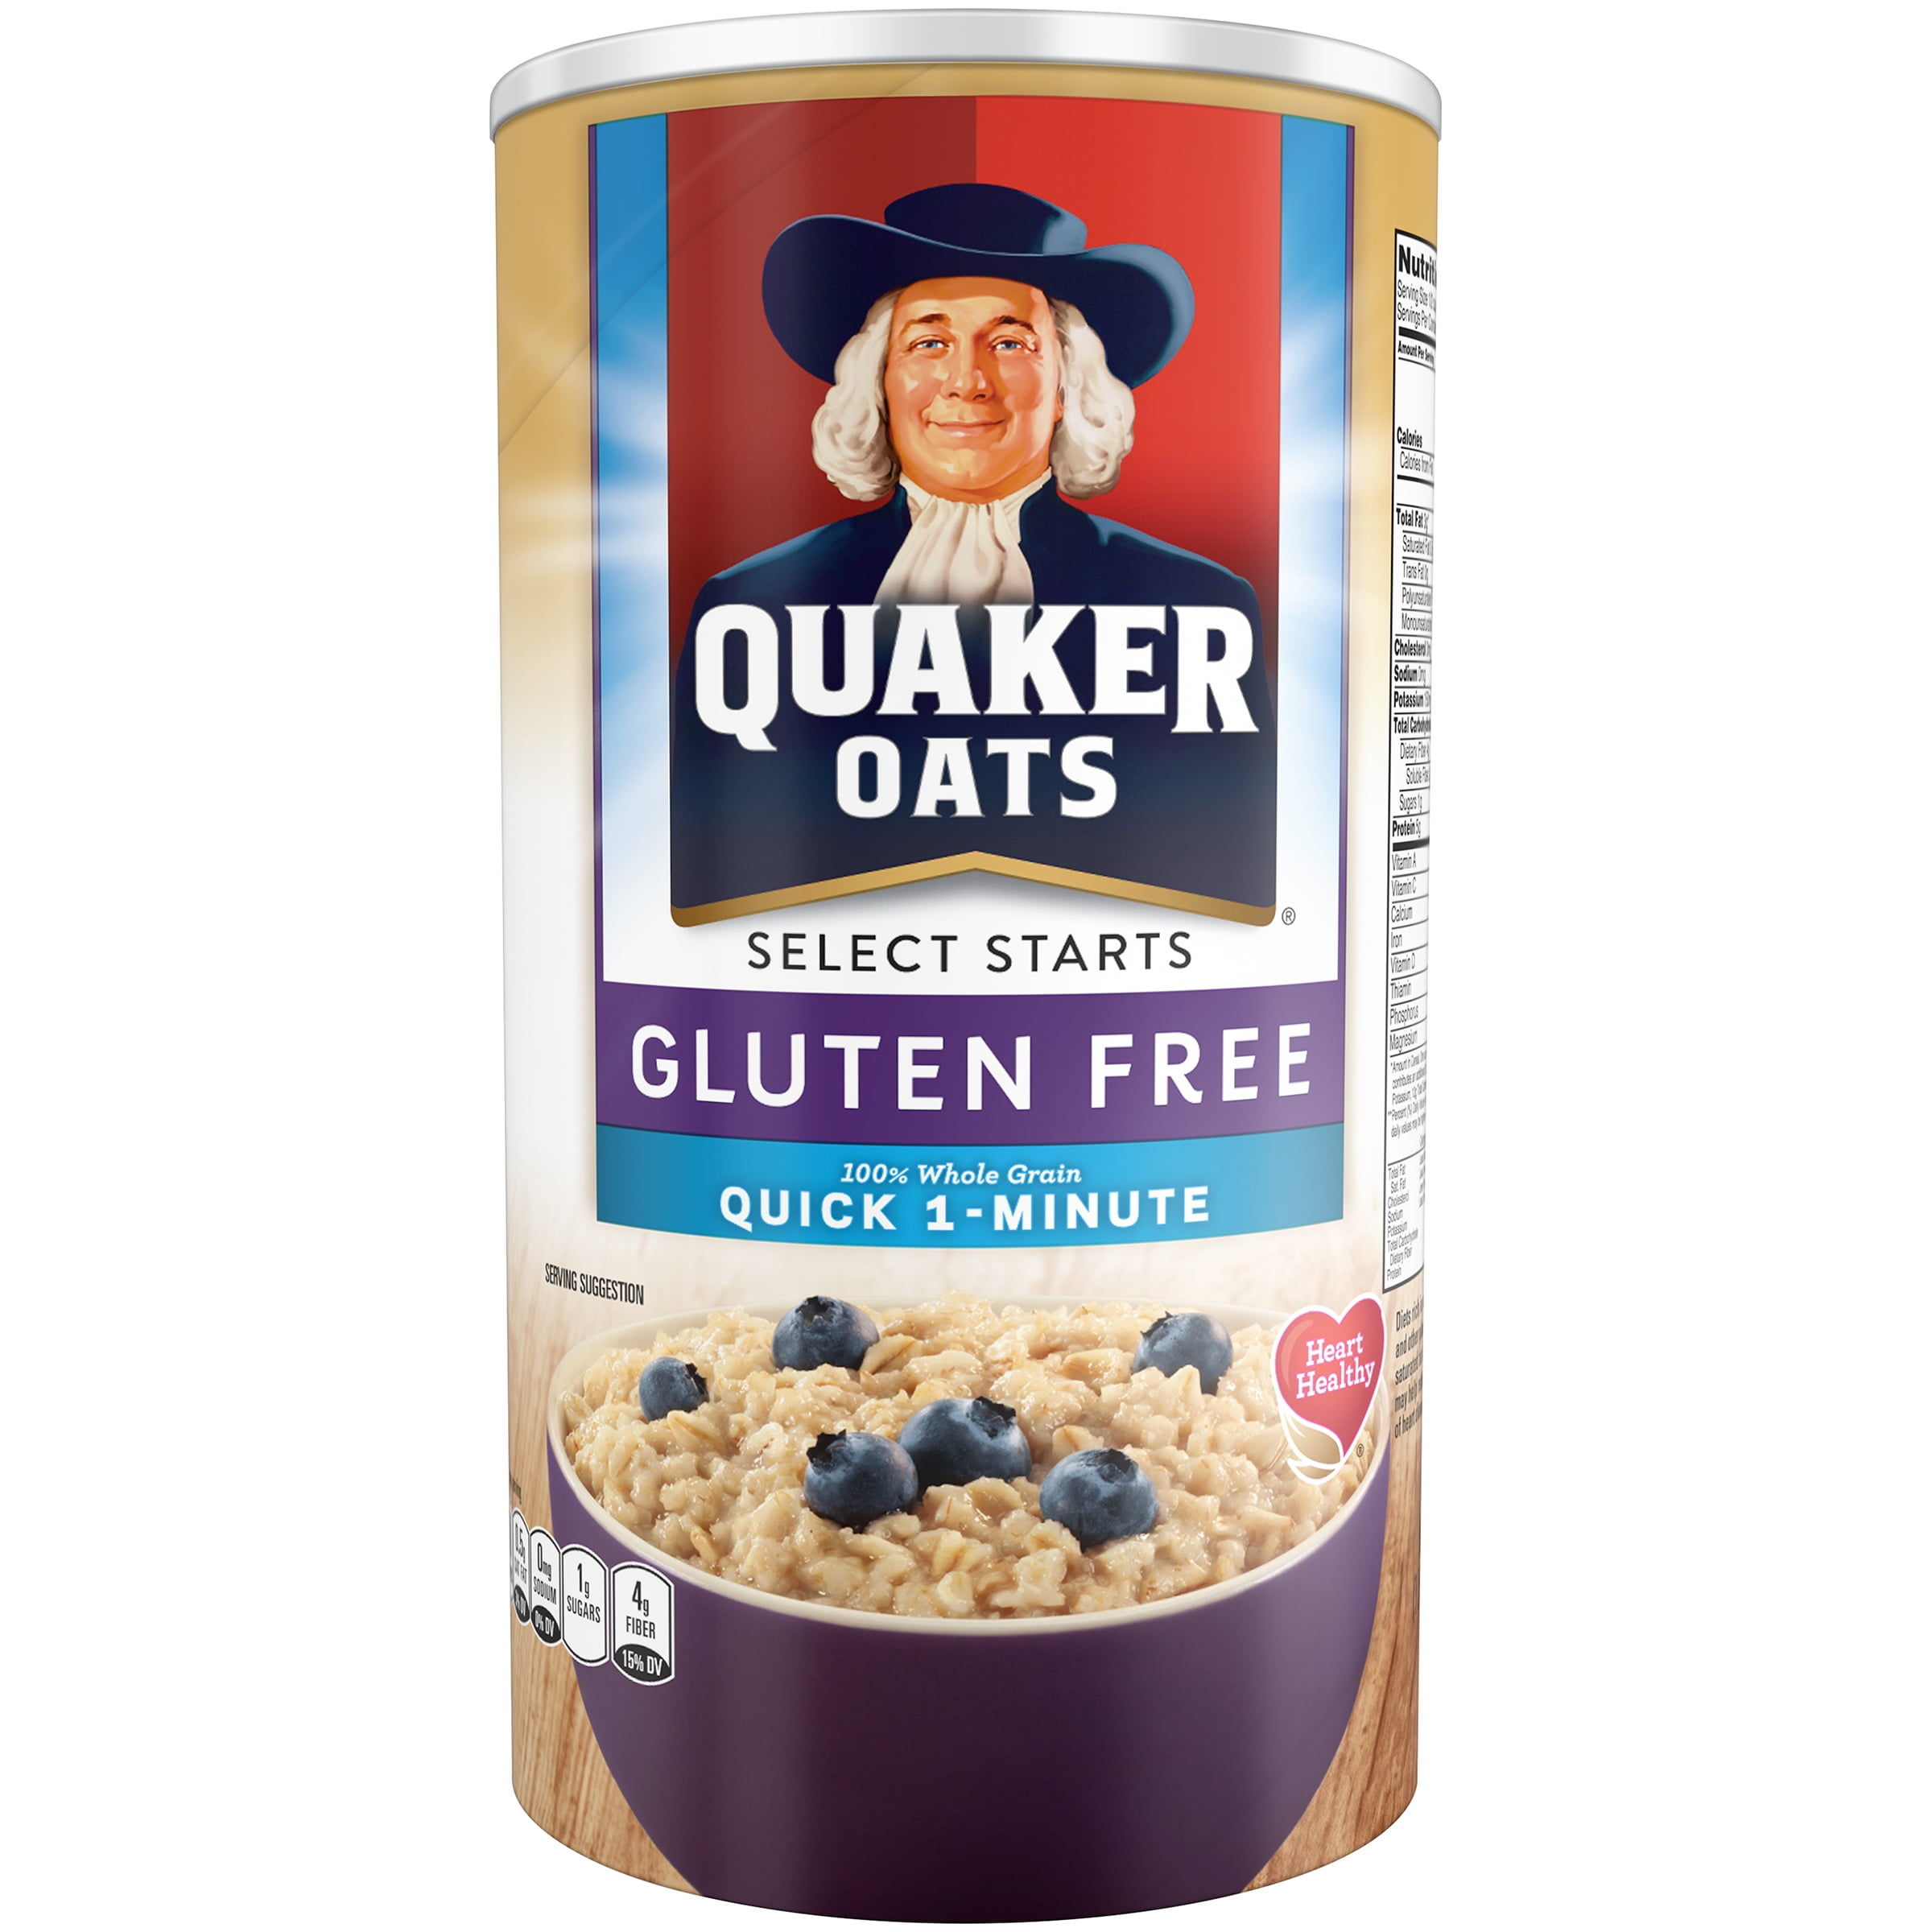 La Avena Quaker Oats Tiene Gluten | laymac.vn